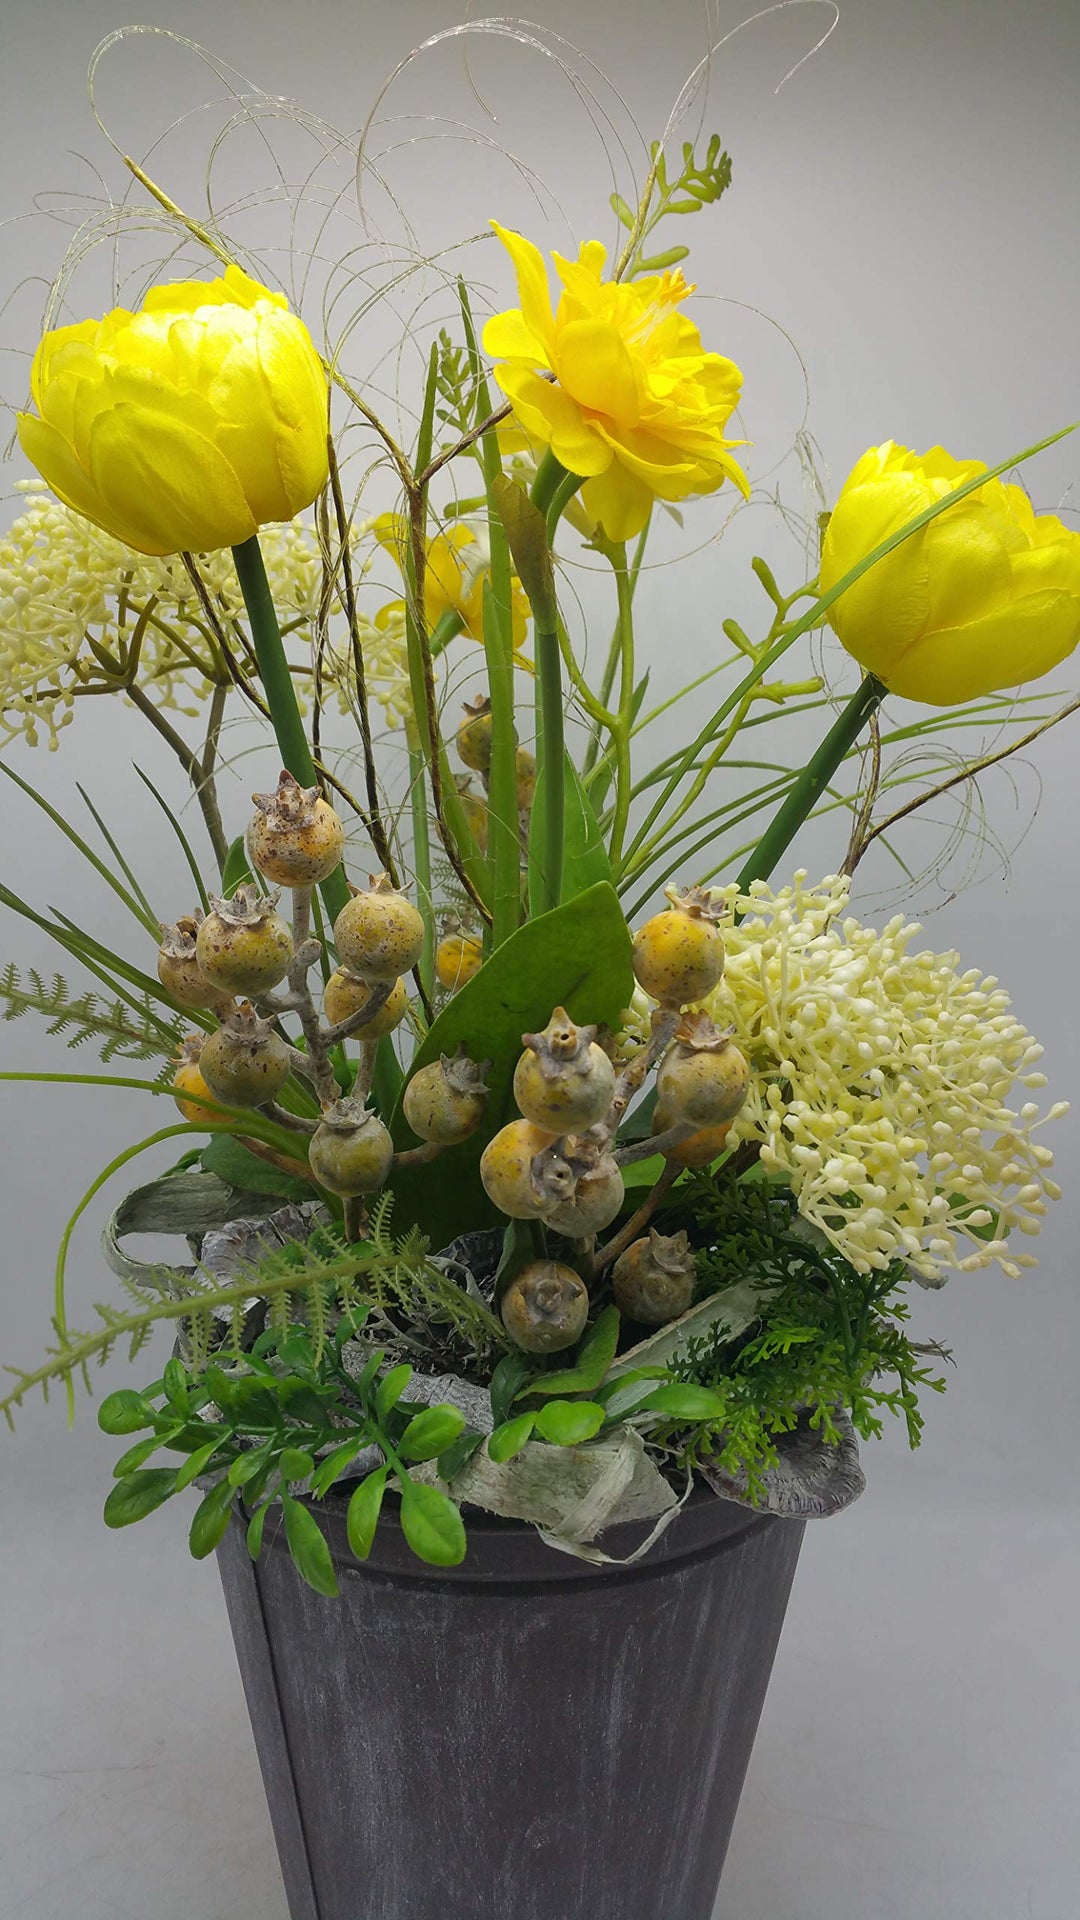 Tischgesteck Frühlingsgesteck Blumengesteck Tulpen Narzissen Beeren Gräser gelb